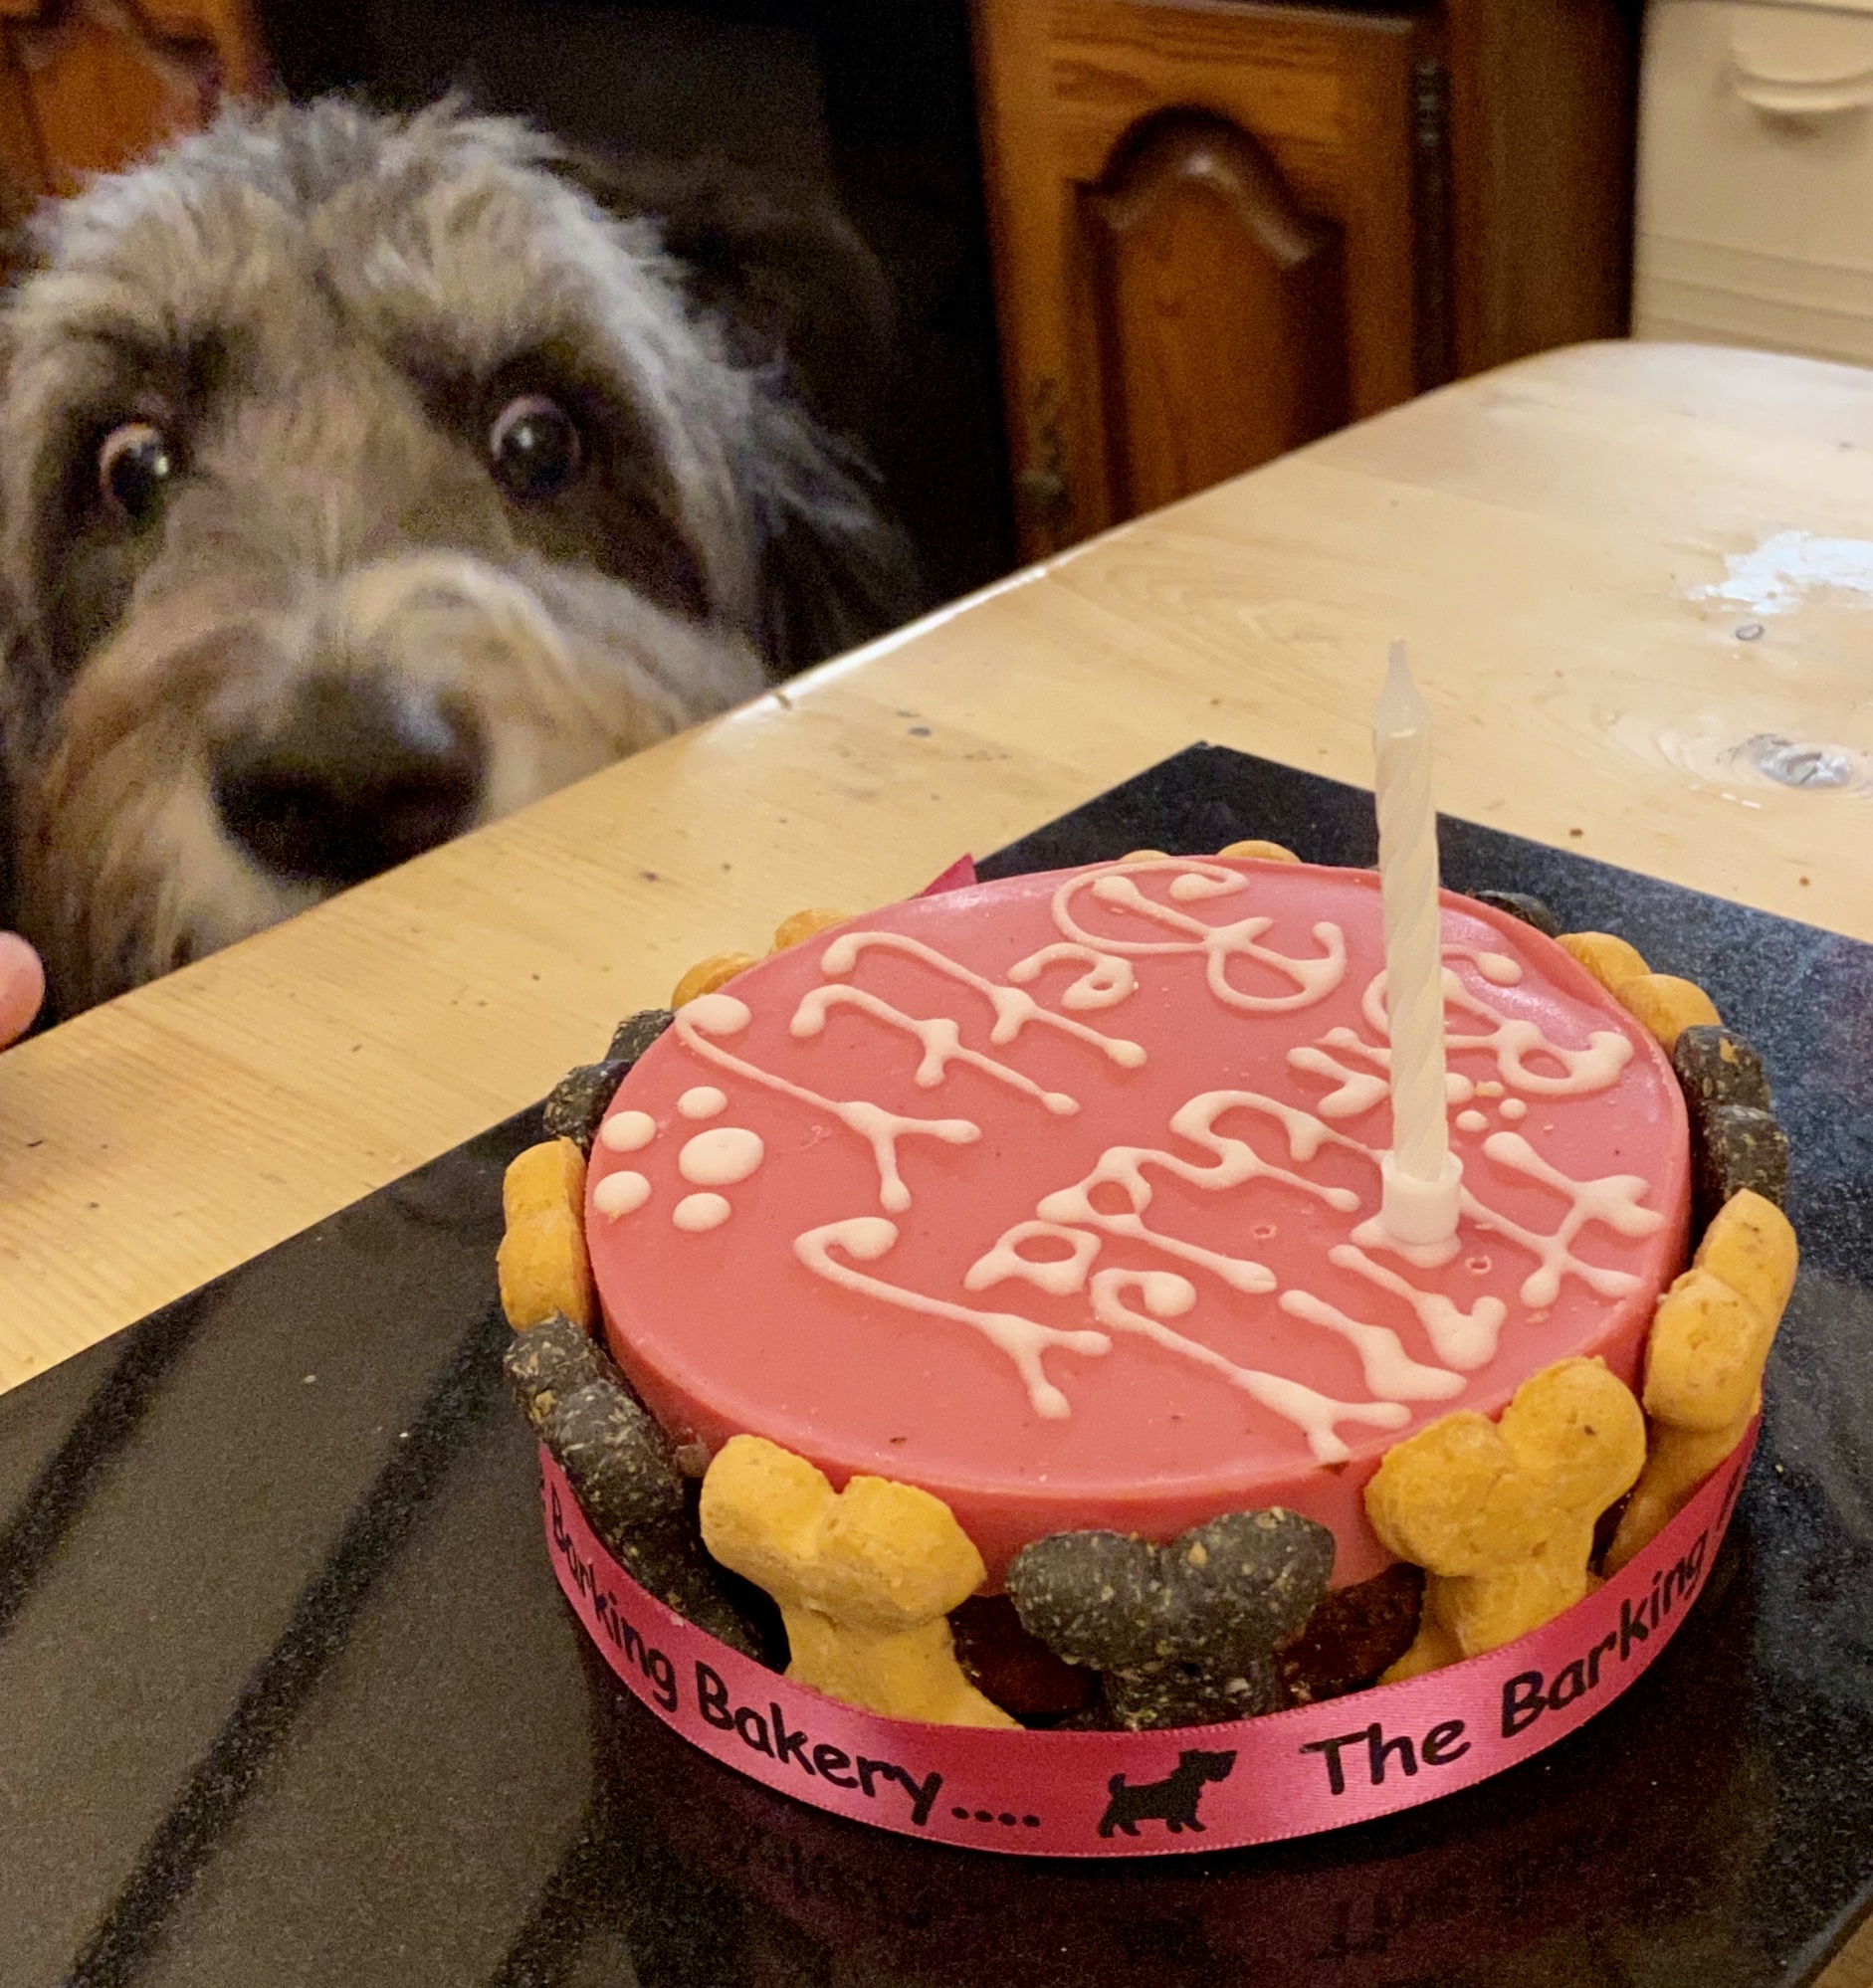 Betty's birthday cake